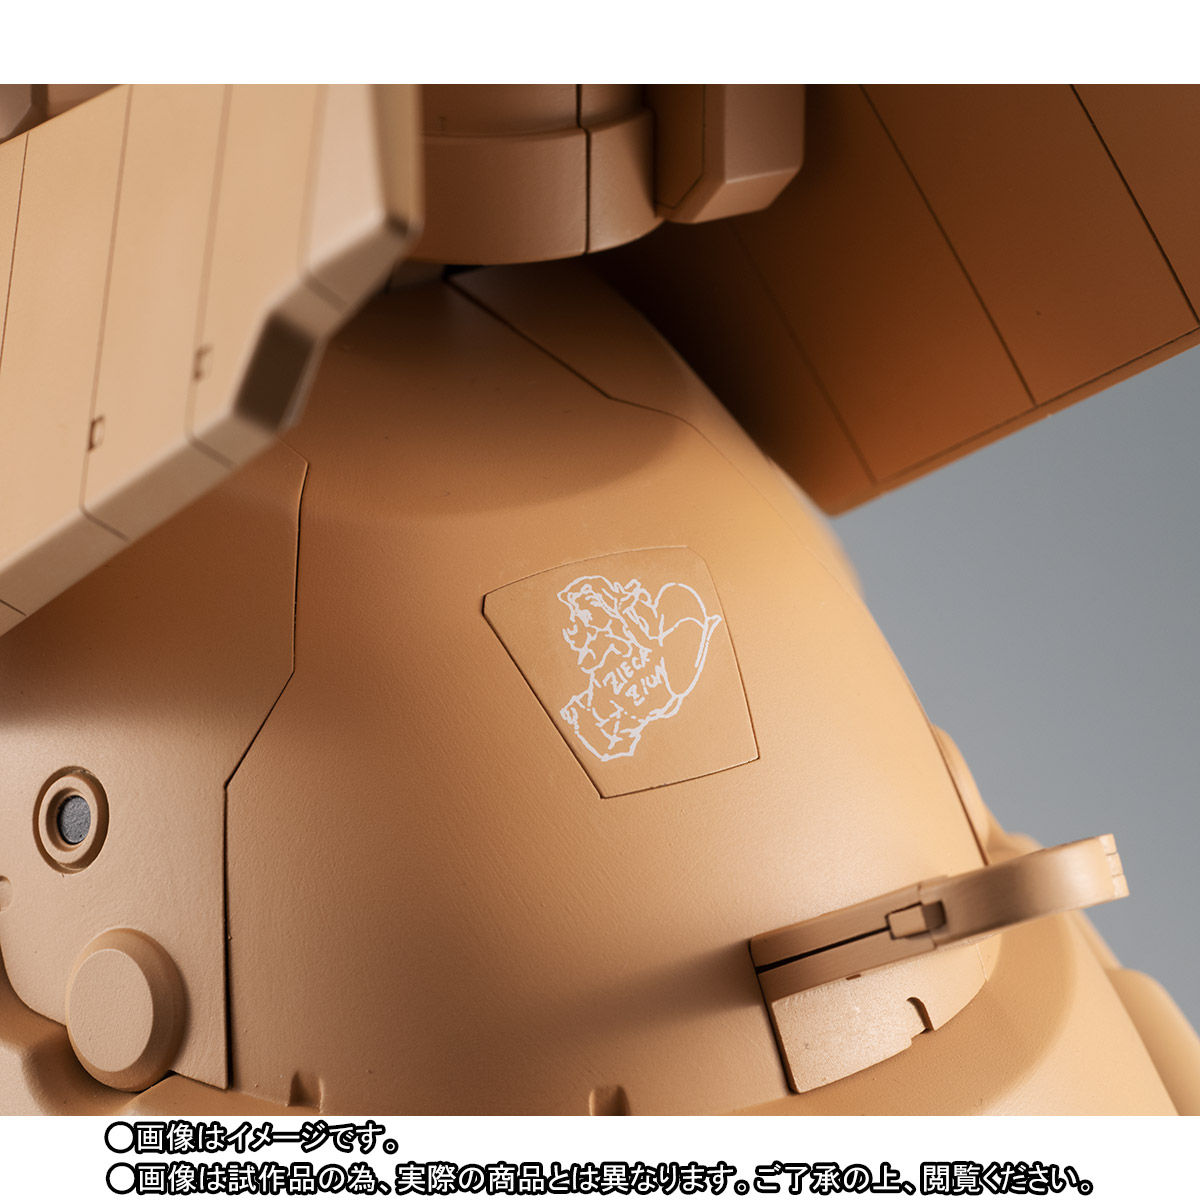 【限定販売】ROBOT魂〈SIDE MS〉『YMS-16M ザメル ver. A.N.I.M.E.』機動戦士ガンダム0083 可動フィギュア-007